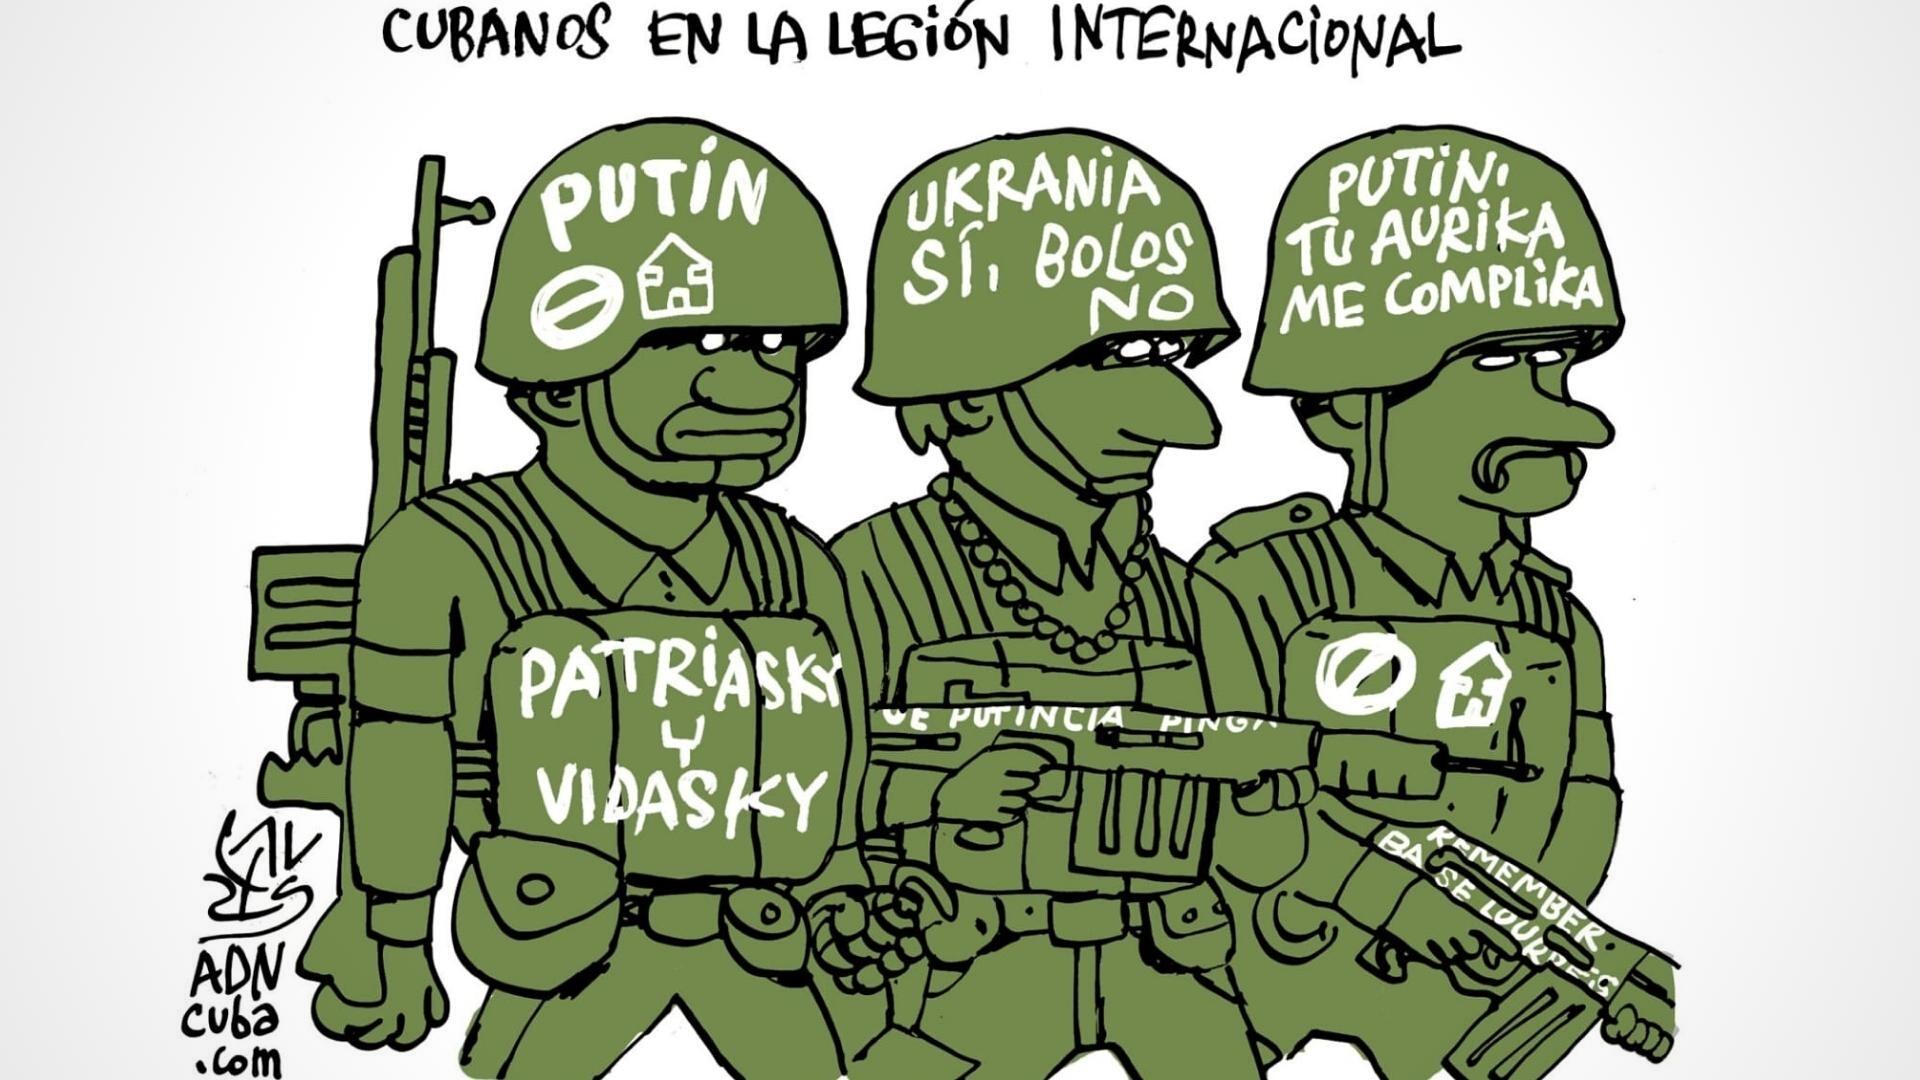 Ilustración de cubanos en Legión Extranjera de Ucrania contra Rusia. Autor: Alen Lauzán/ ADN Cuba